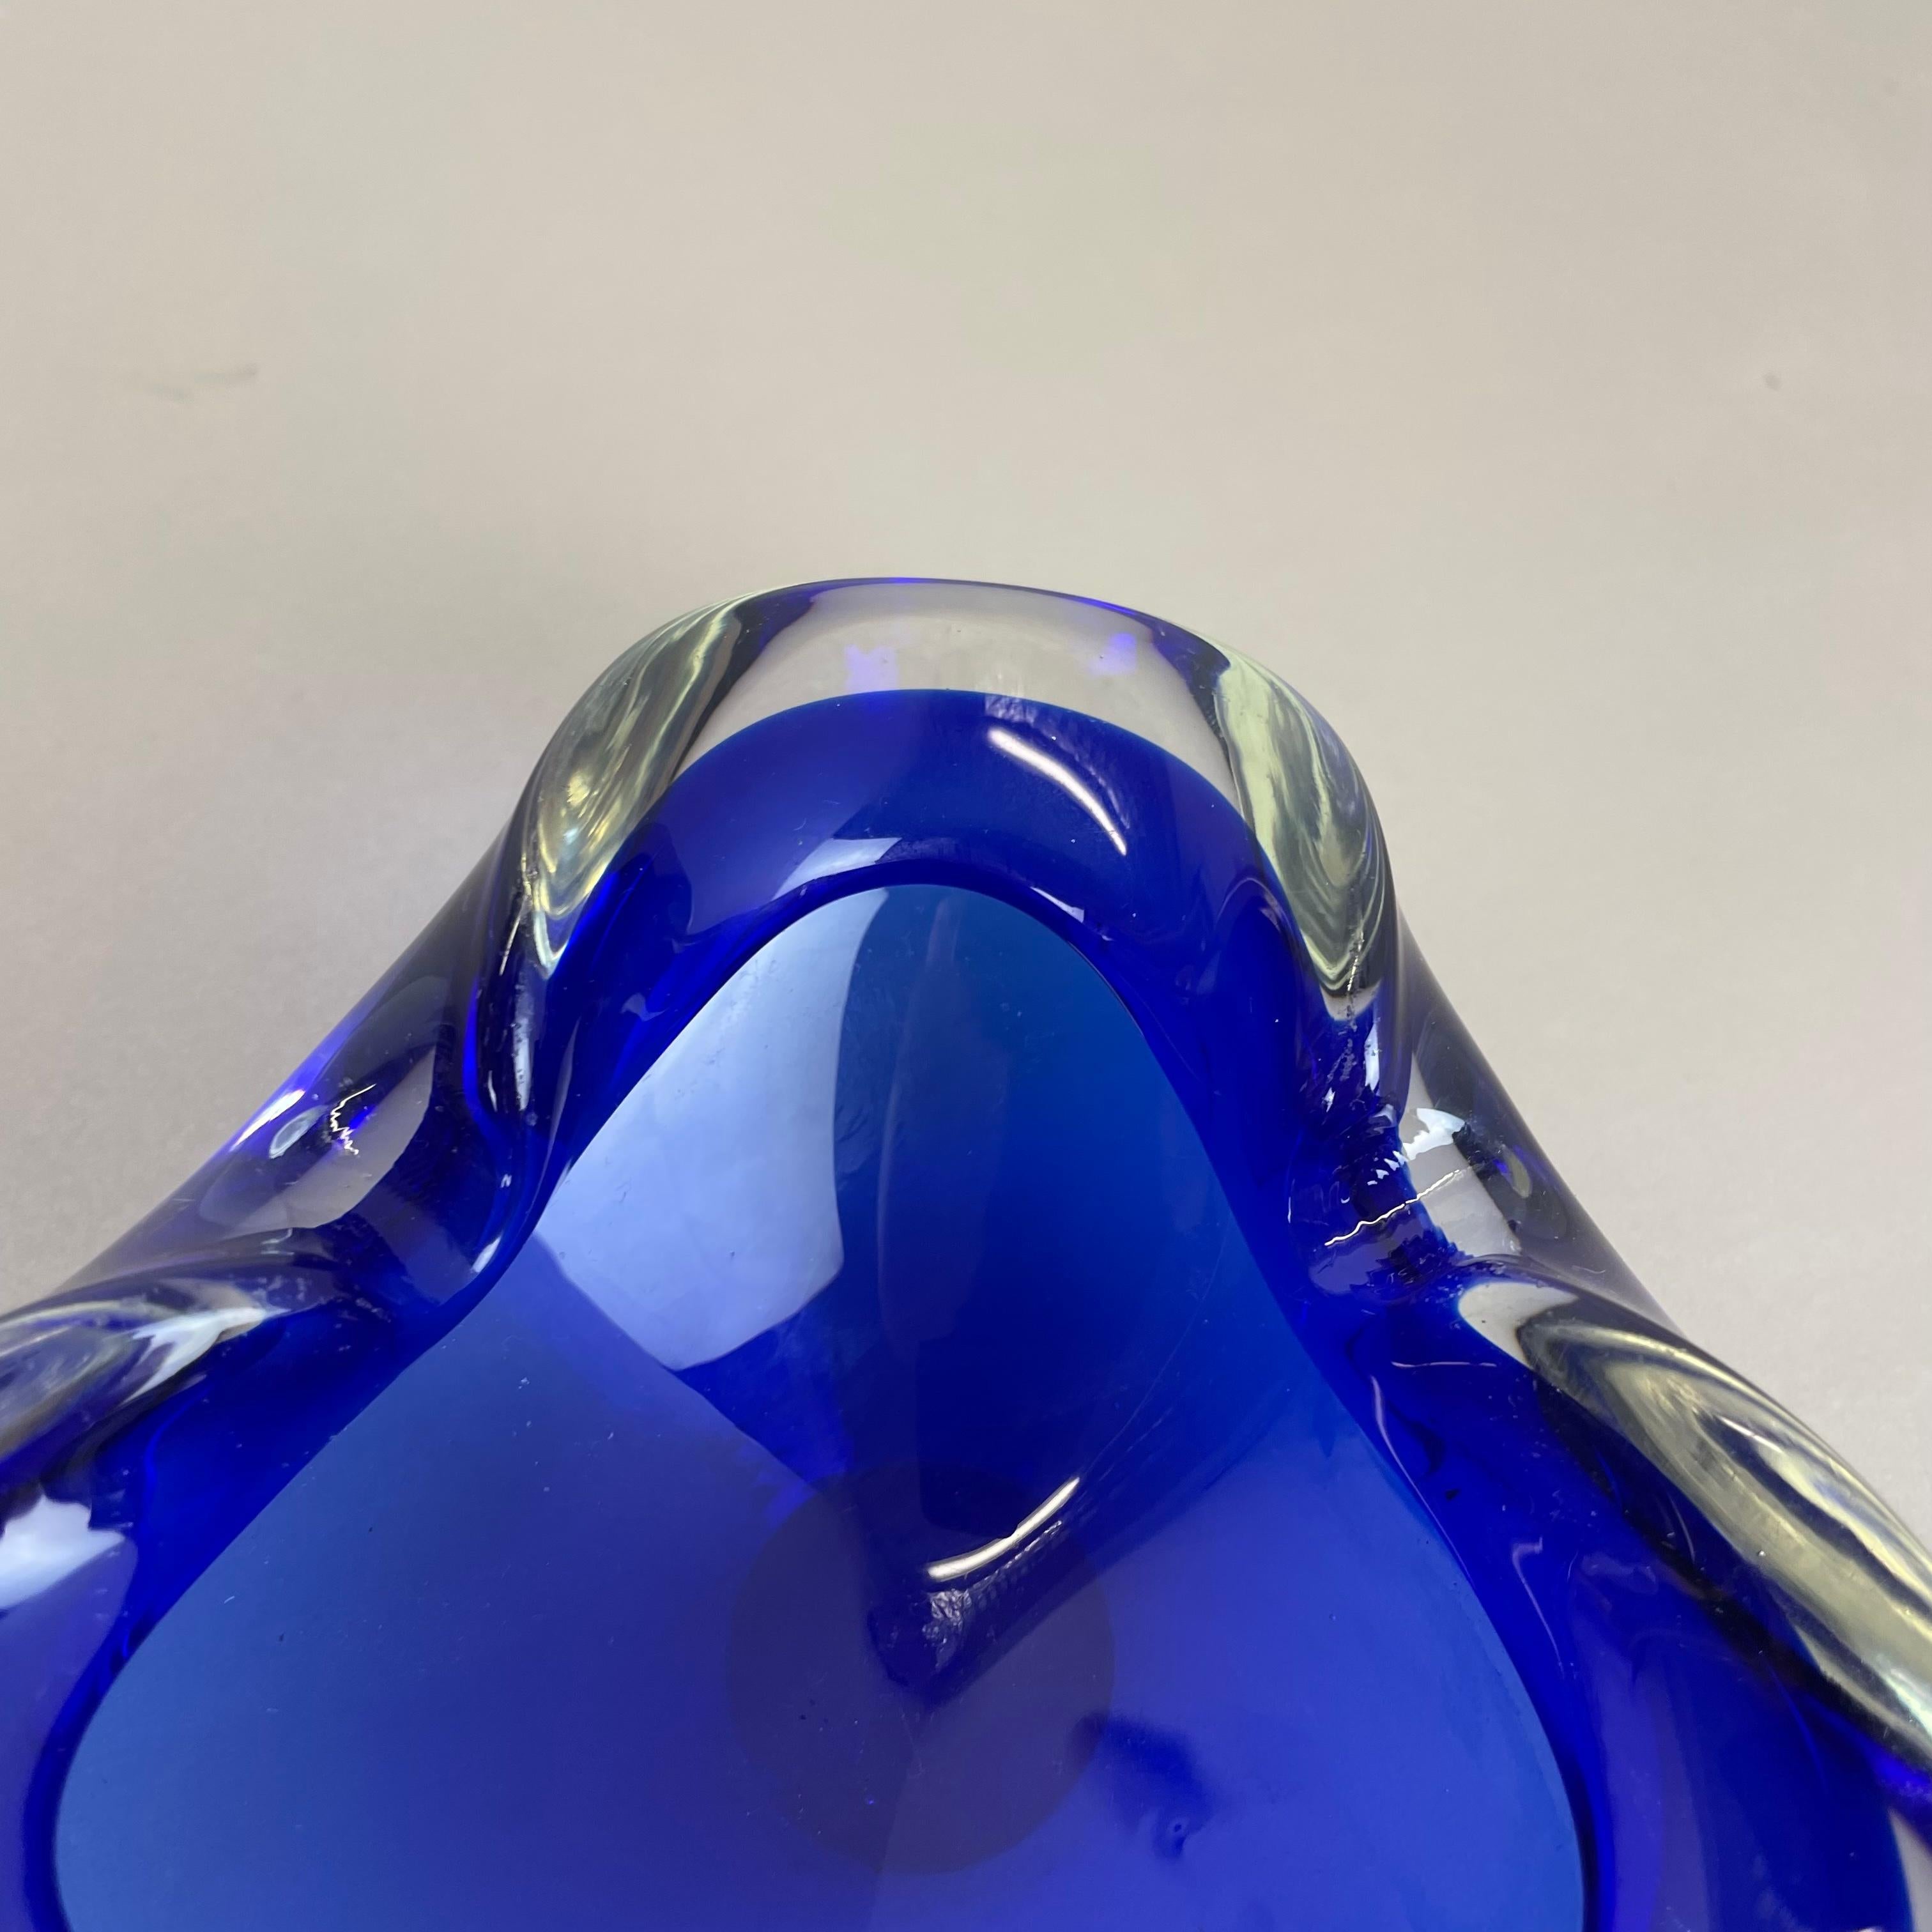 Rare Murano Glass 